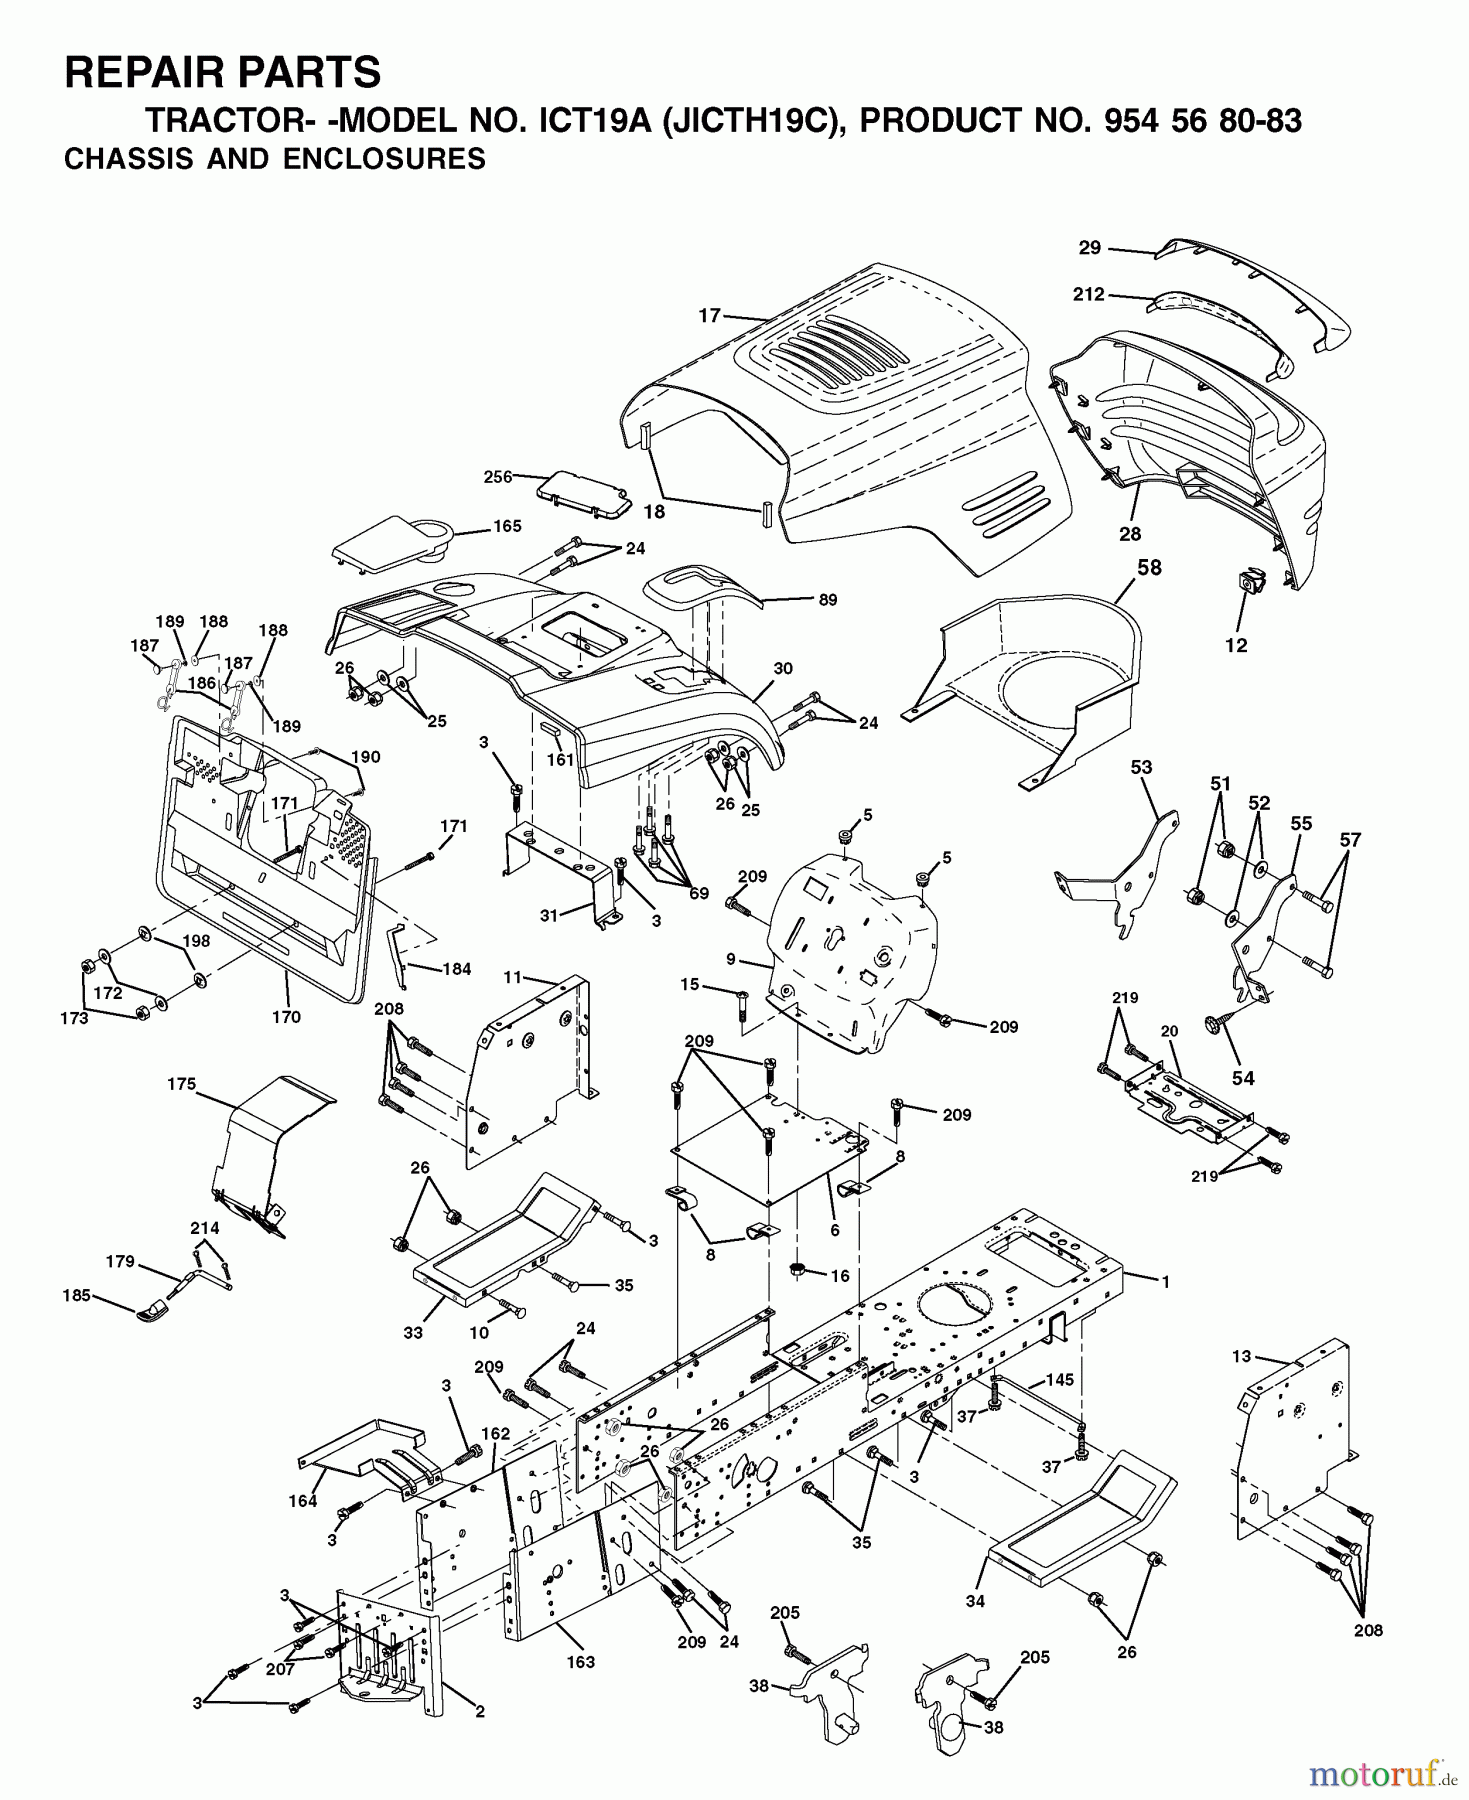  Jonsered Rasen  und Garten Traktoren ICT19A (JICTH19C, 954568083) - Jonsered Lawn & Garden Tractor (2002-06) CHASSIS ENCLOSURES